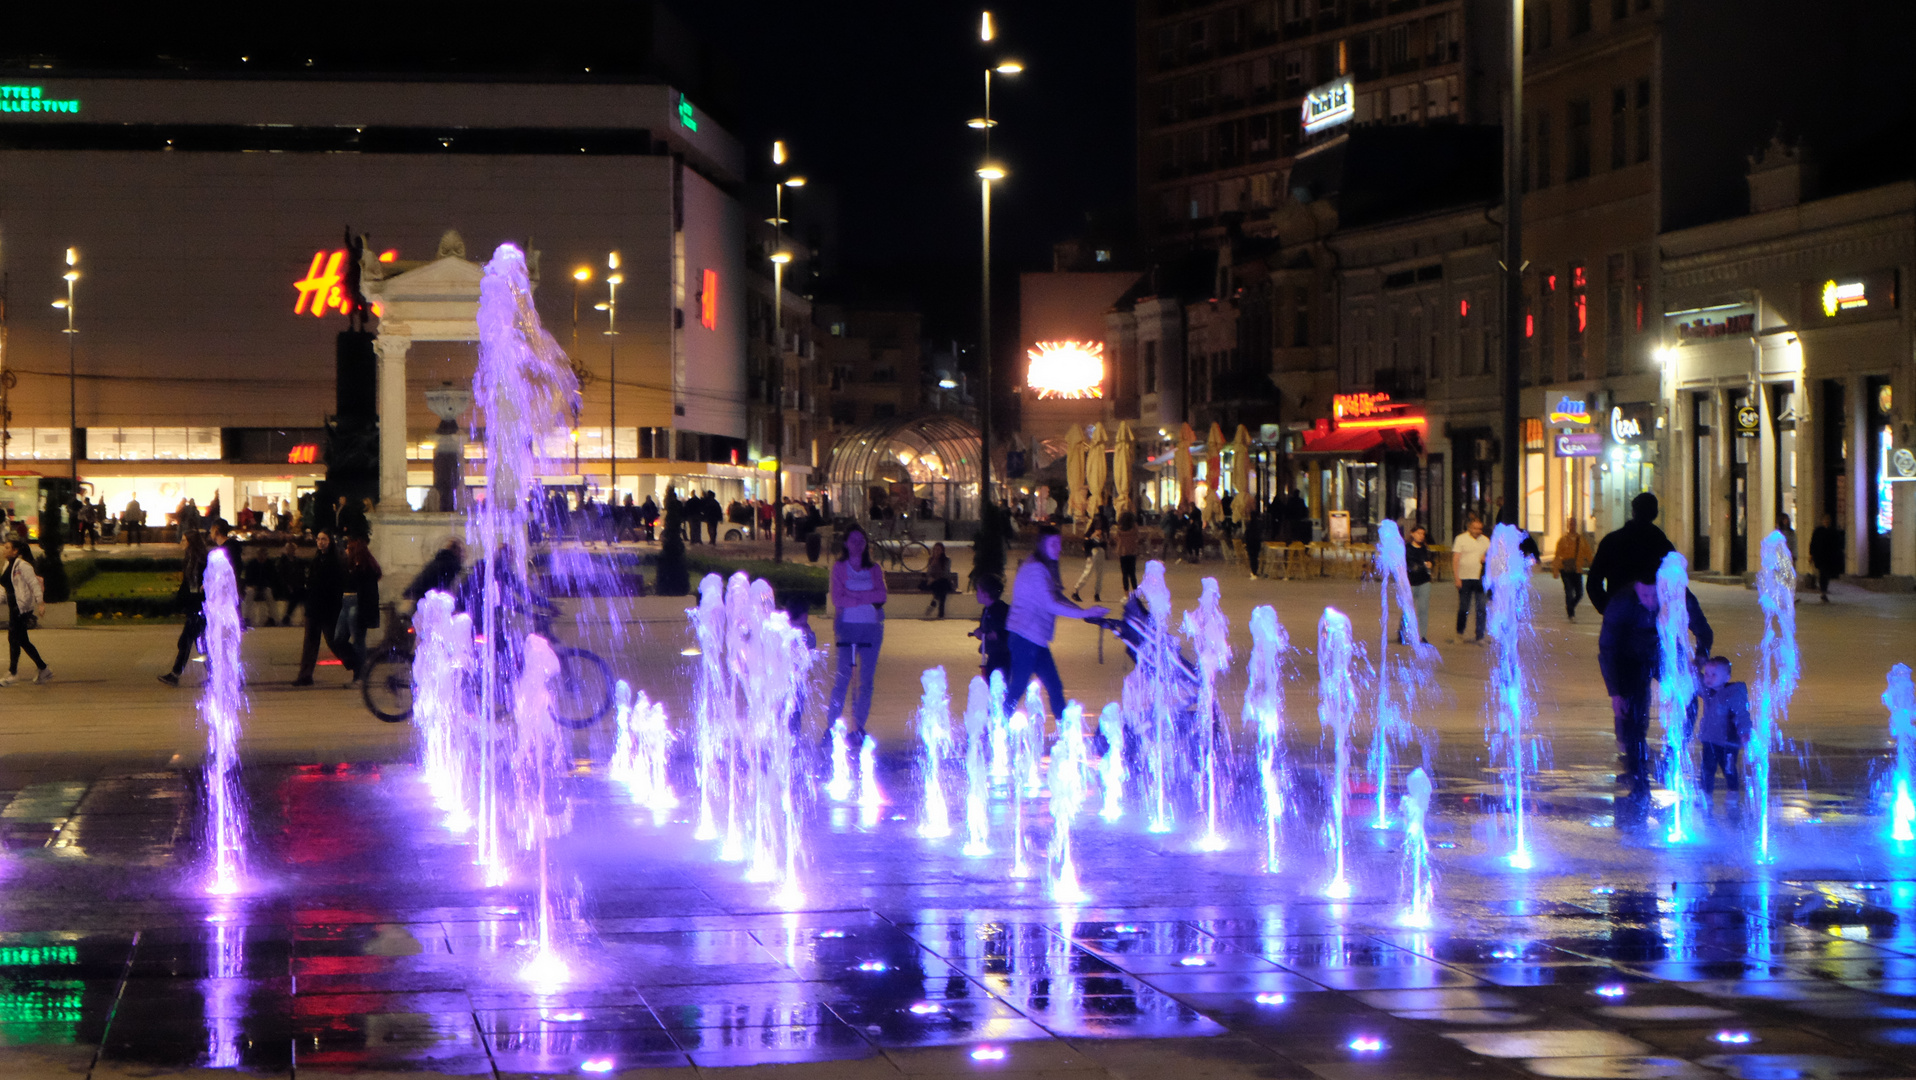 (9) Serbien, Niš - Abends im Stadtzentrum, Wasser- und Lichtspiele